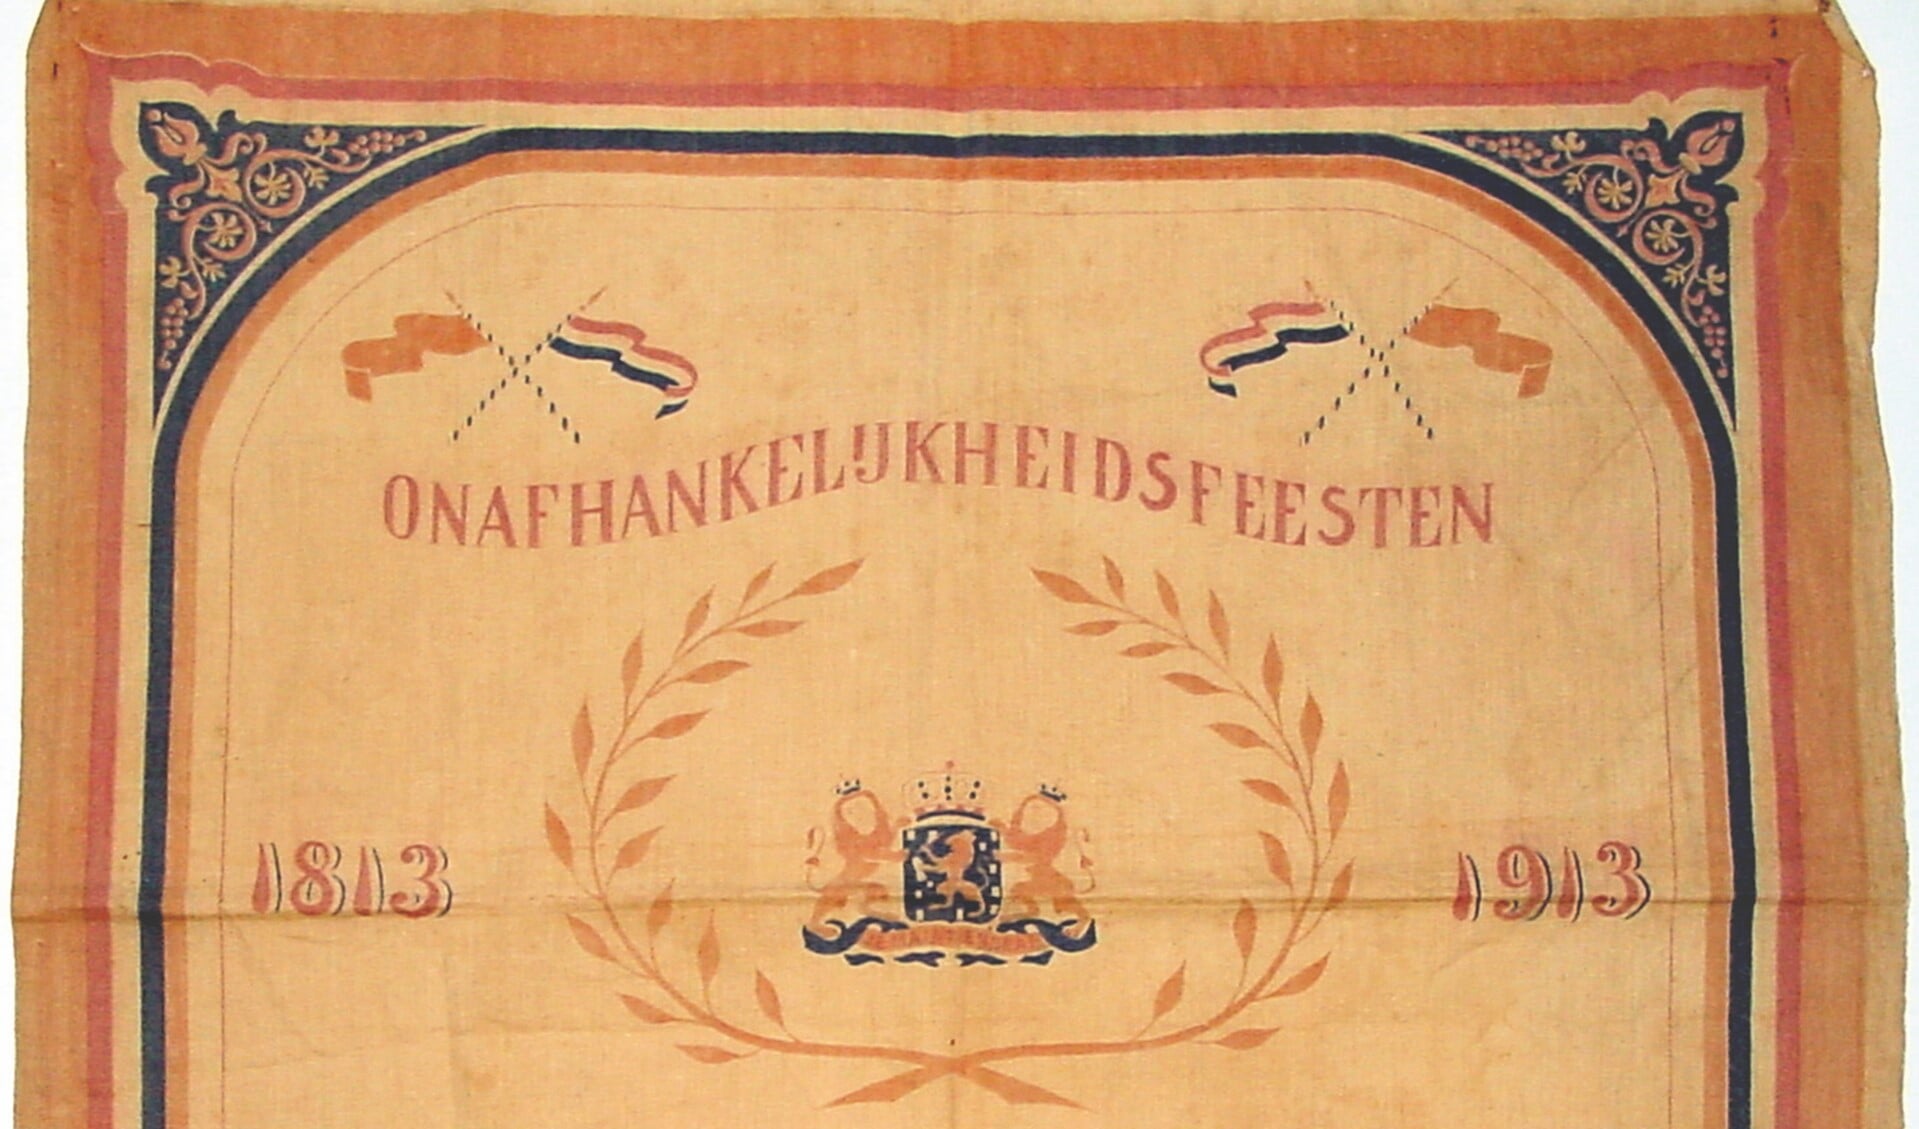 Door Ineke van Schuppen namens de Historische Vereniging Oud Veenendaal